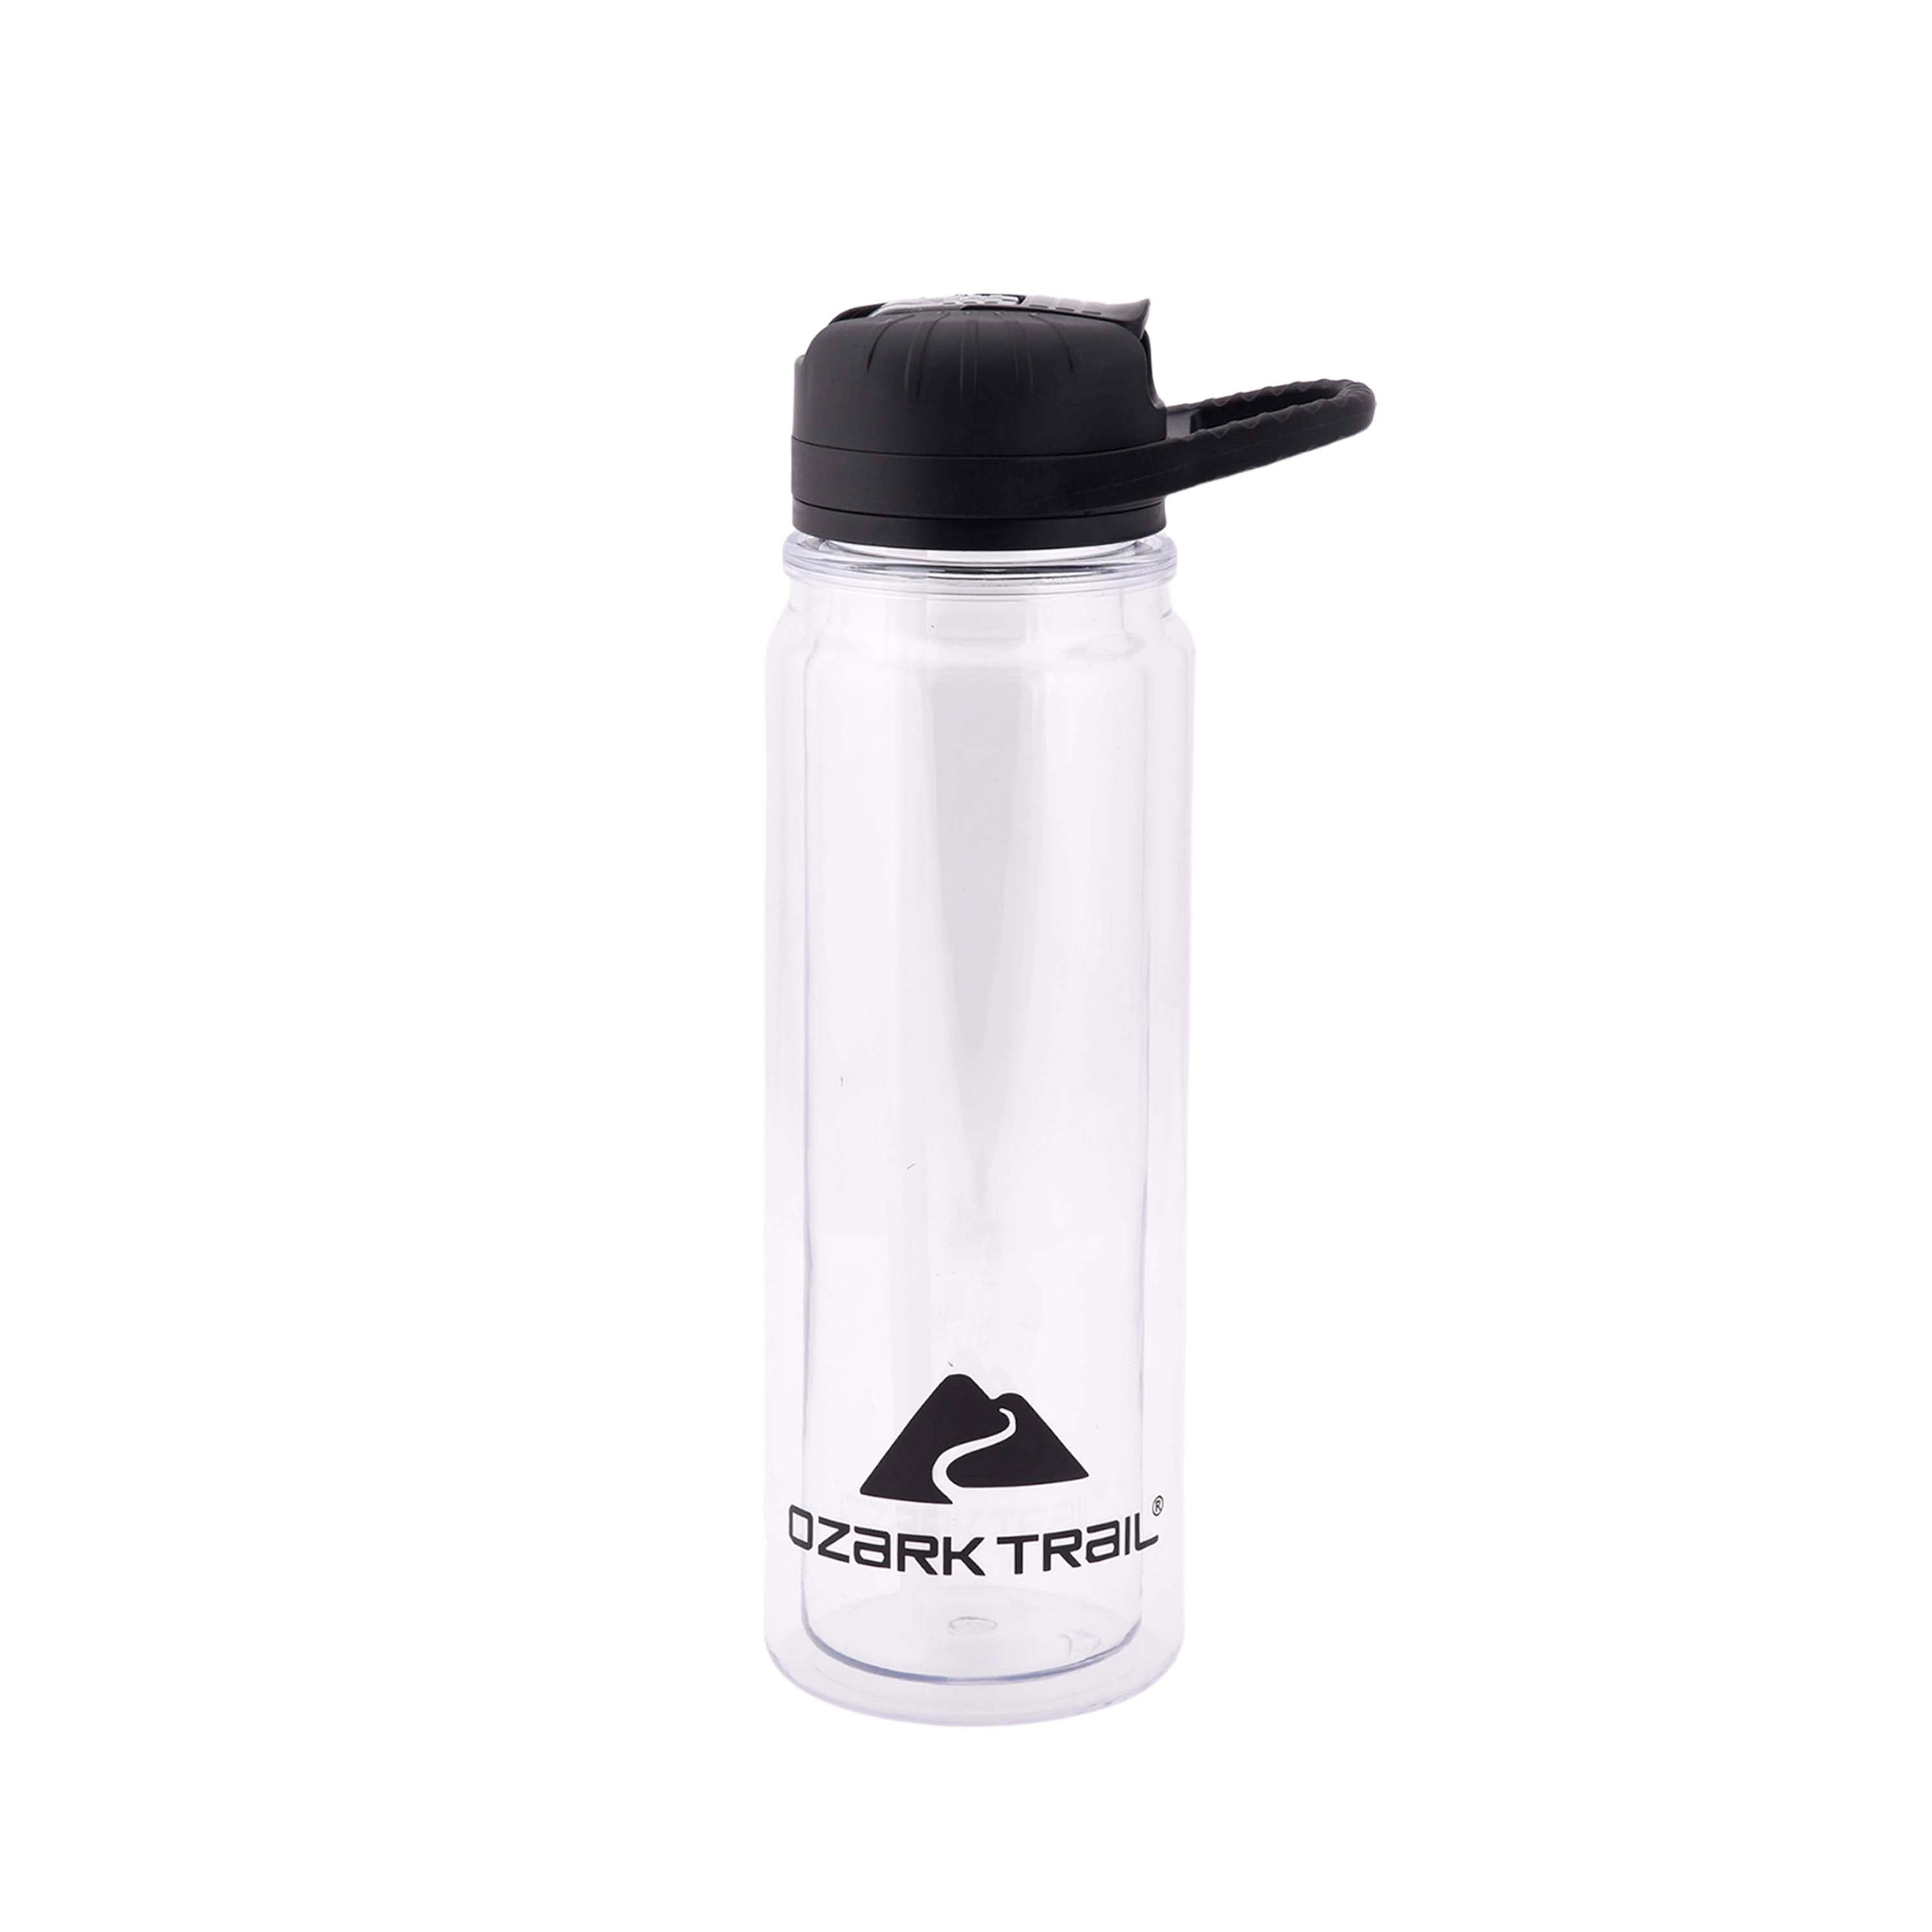 GearTek Tritan Clear Water Bottle with Straw | BPA Free 24 oz Sports Water  Bottle | Leak Proof Re-Us…See more GearTek Tritan Clear Water Bottle with